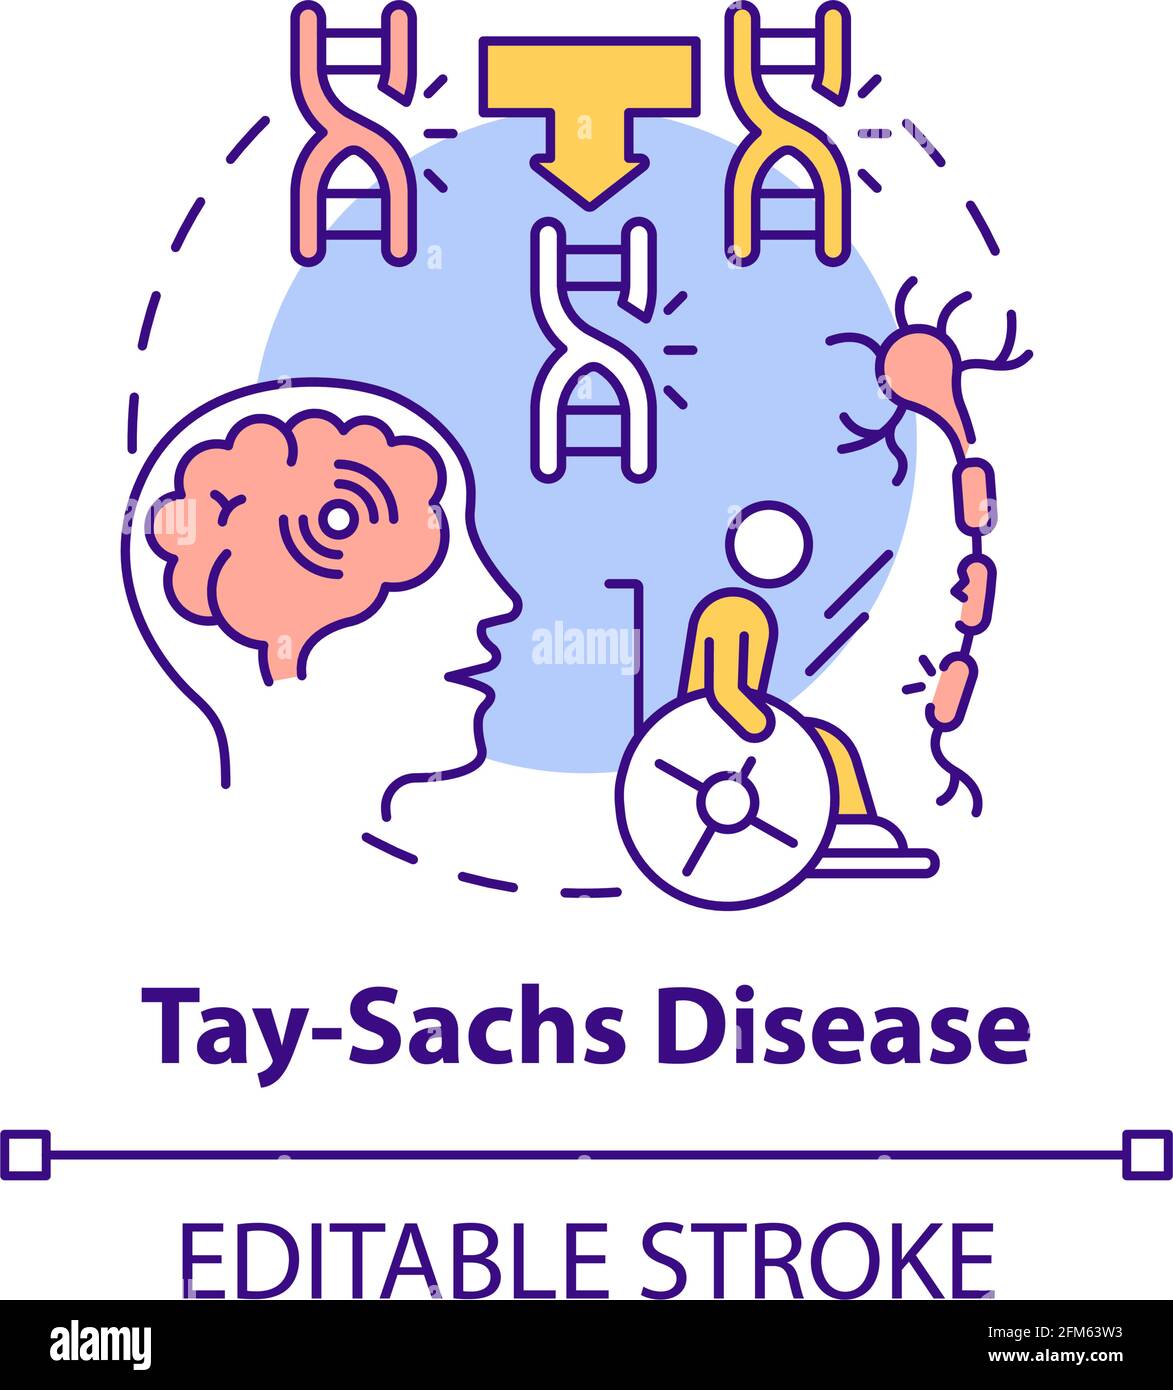 Icono del concepto de enfermedad de Tay sachs Ilustración del Vector